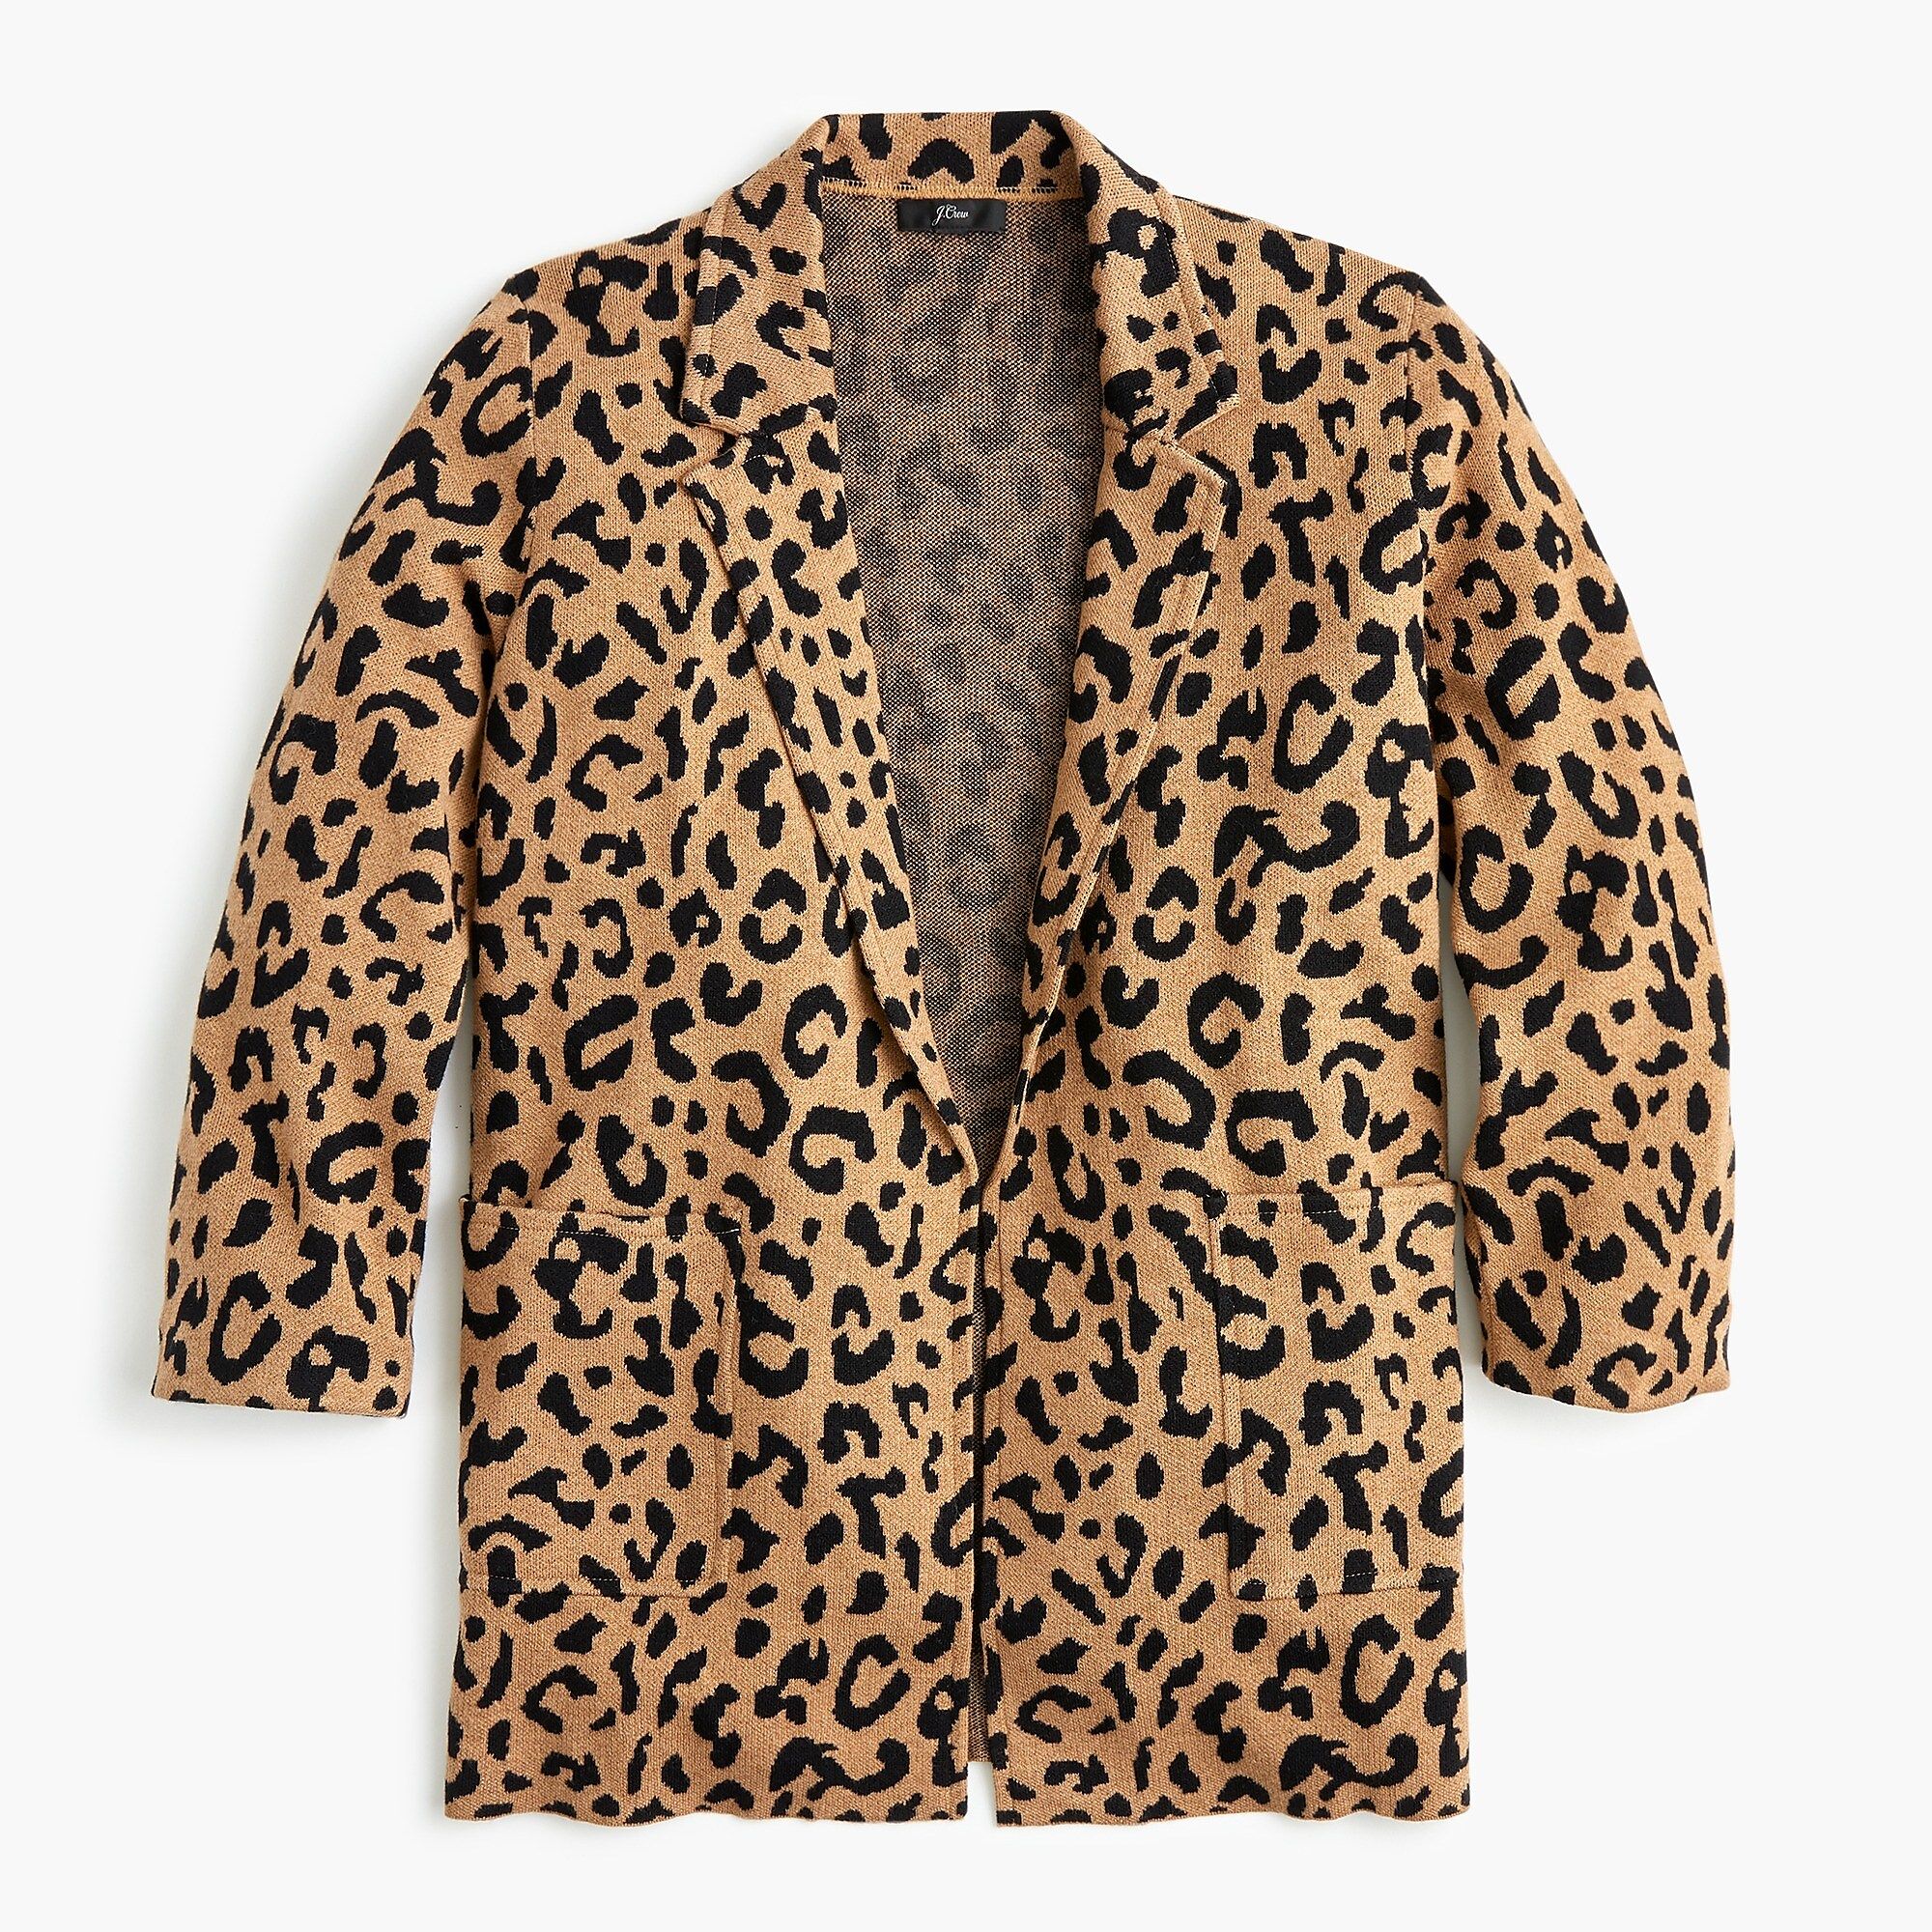 Sophie open-front sweater-blazer in leopard | J.Crew US